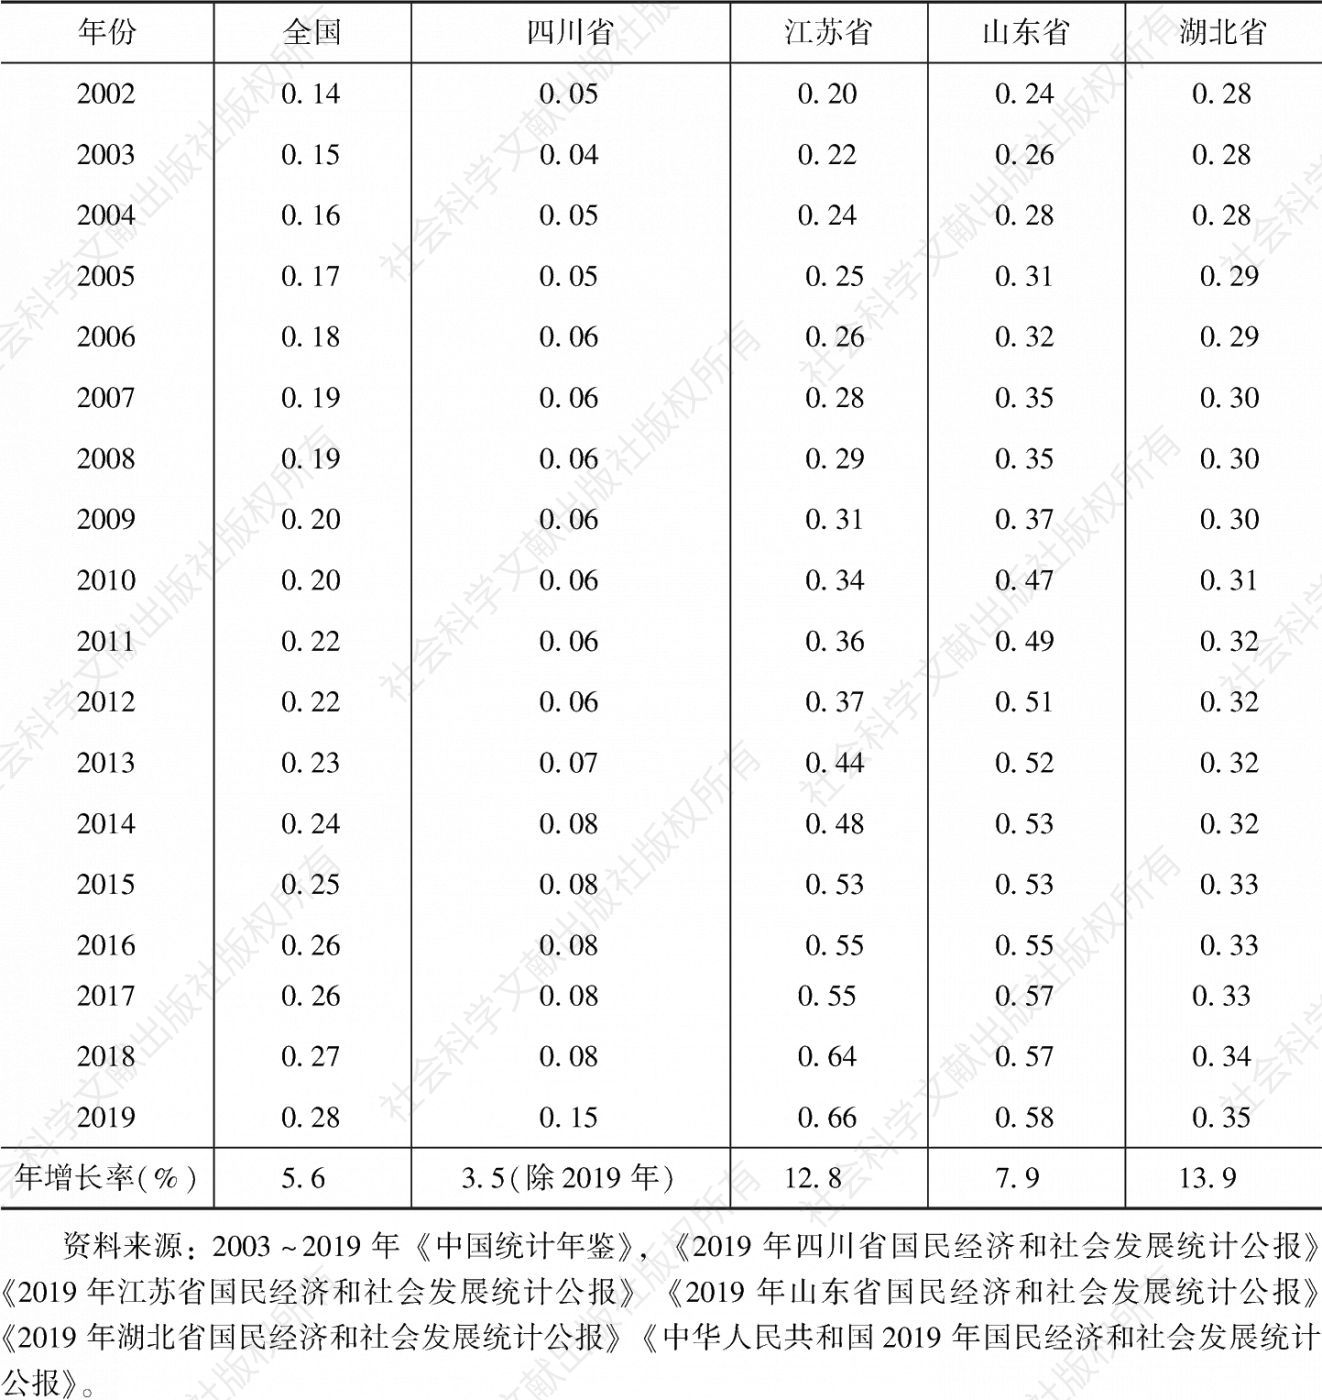 表1 2002～2019年四川省与全国及其他省份“街镇比率”比较